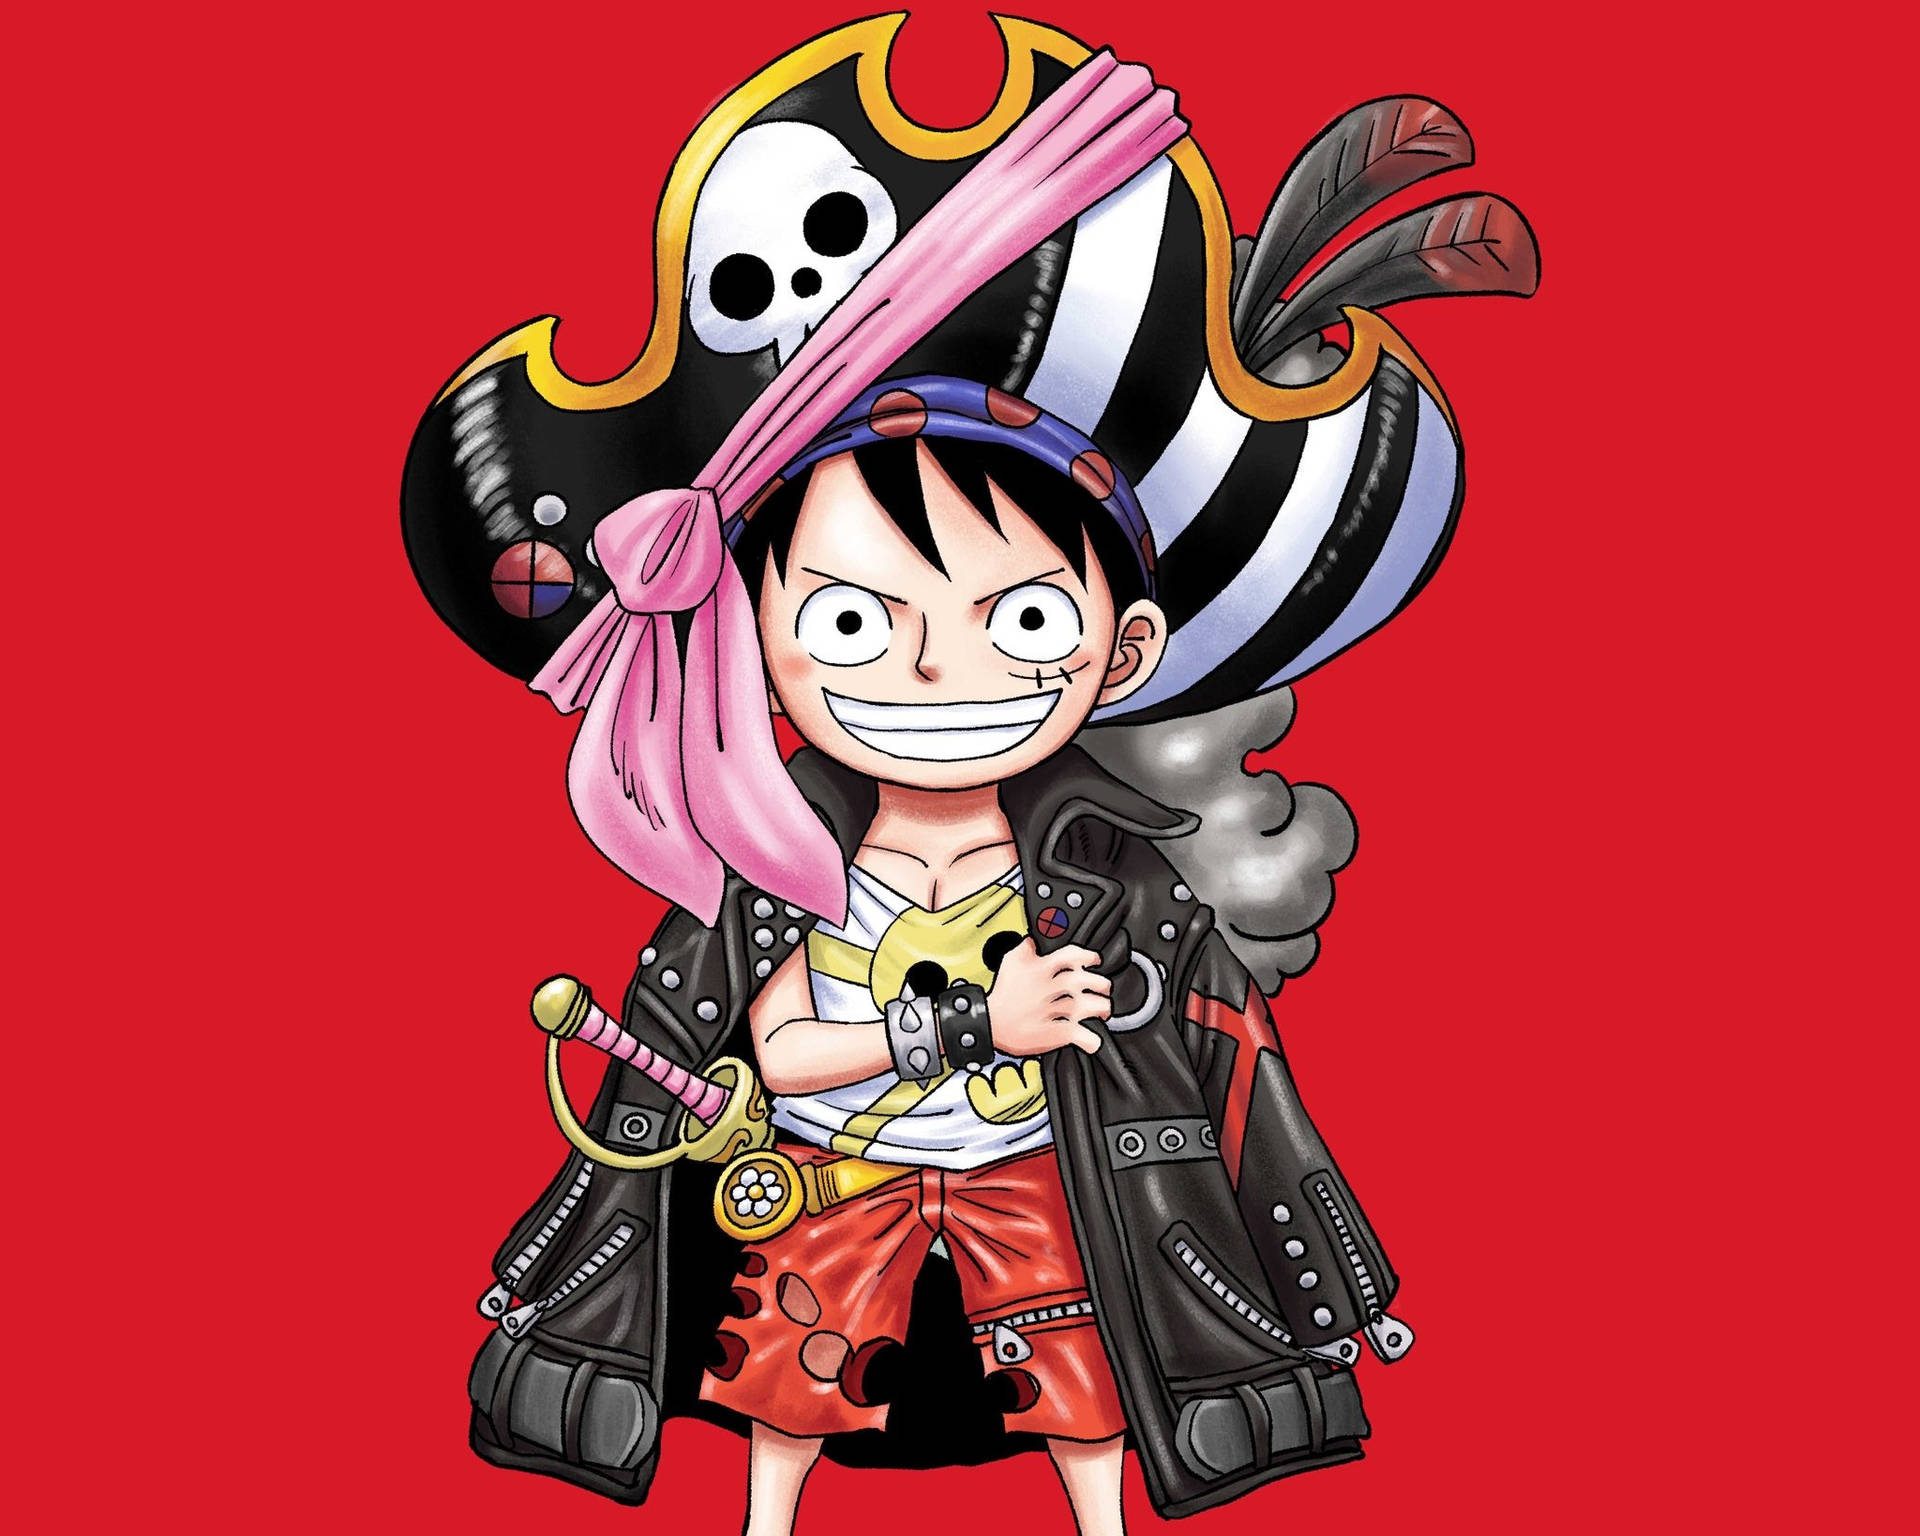 Hãy khám phá bức vẽ của One Piece với nhân vật chính Luffy cực kì đáng yêu và hài hước. Bức họa này sẽ mang đến cho bạn một cảm giác vui tươi và năng động với màu sắc tươi sáng của nó. Cùng truyền tải thông điệp \